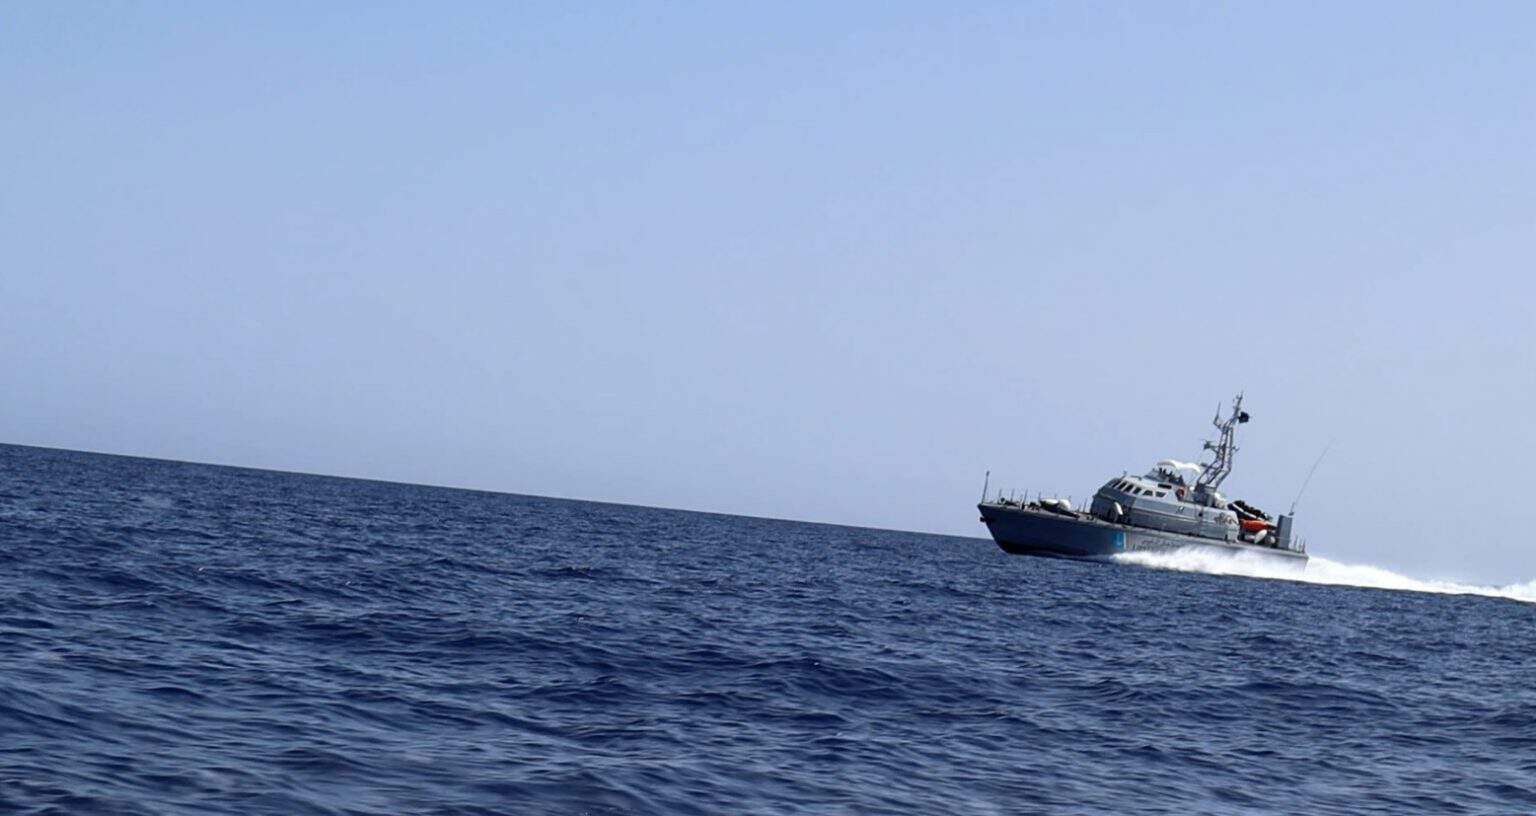 Le violazioni e le violenze della guardia costiera libica documentate da SOS MEDITERRANEE